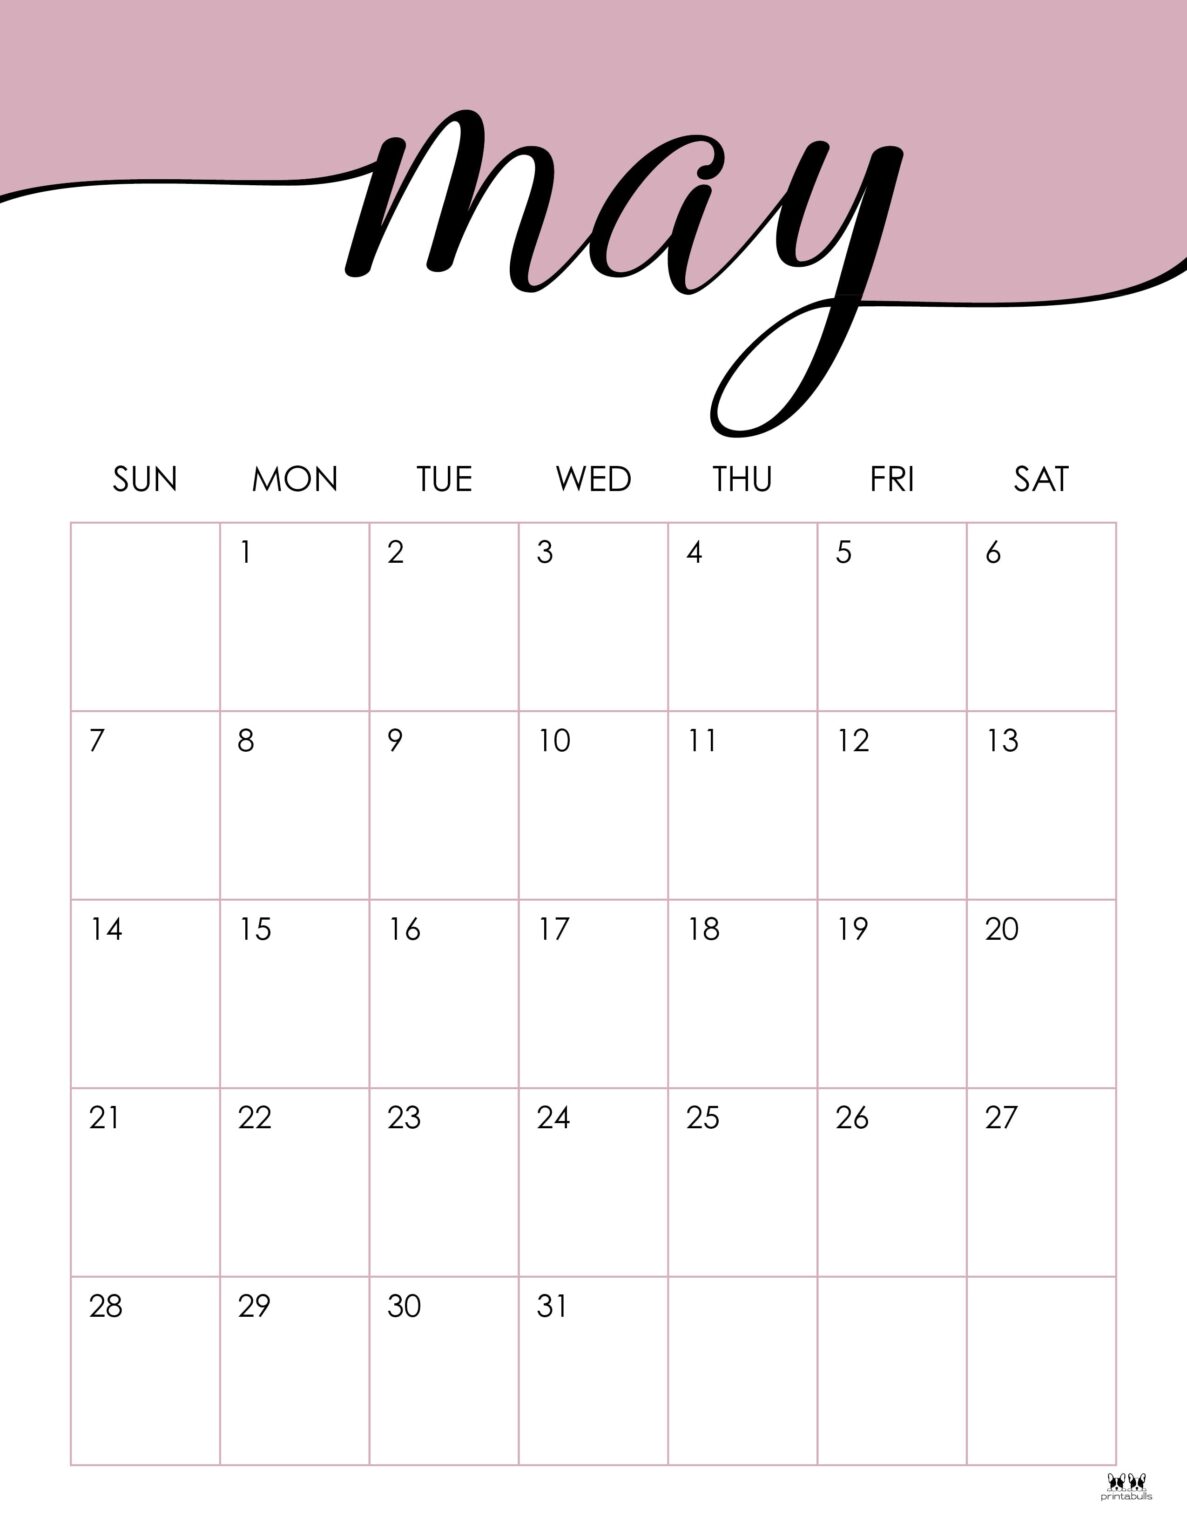 may-2023-calendars-50-free-printables-printabulls